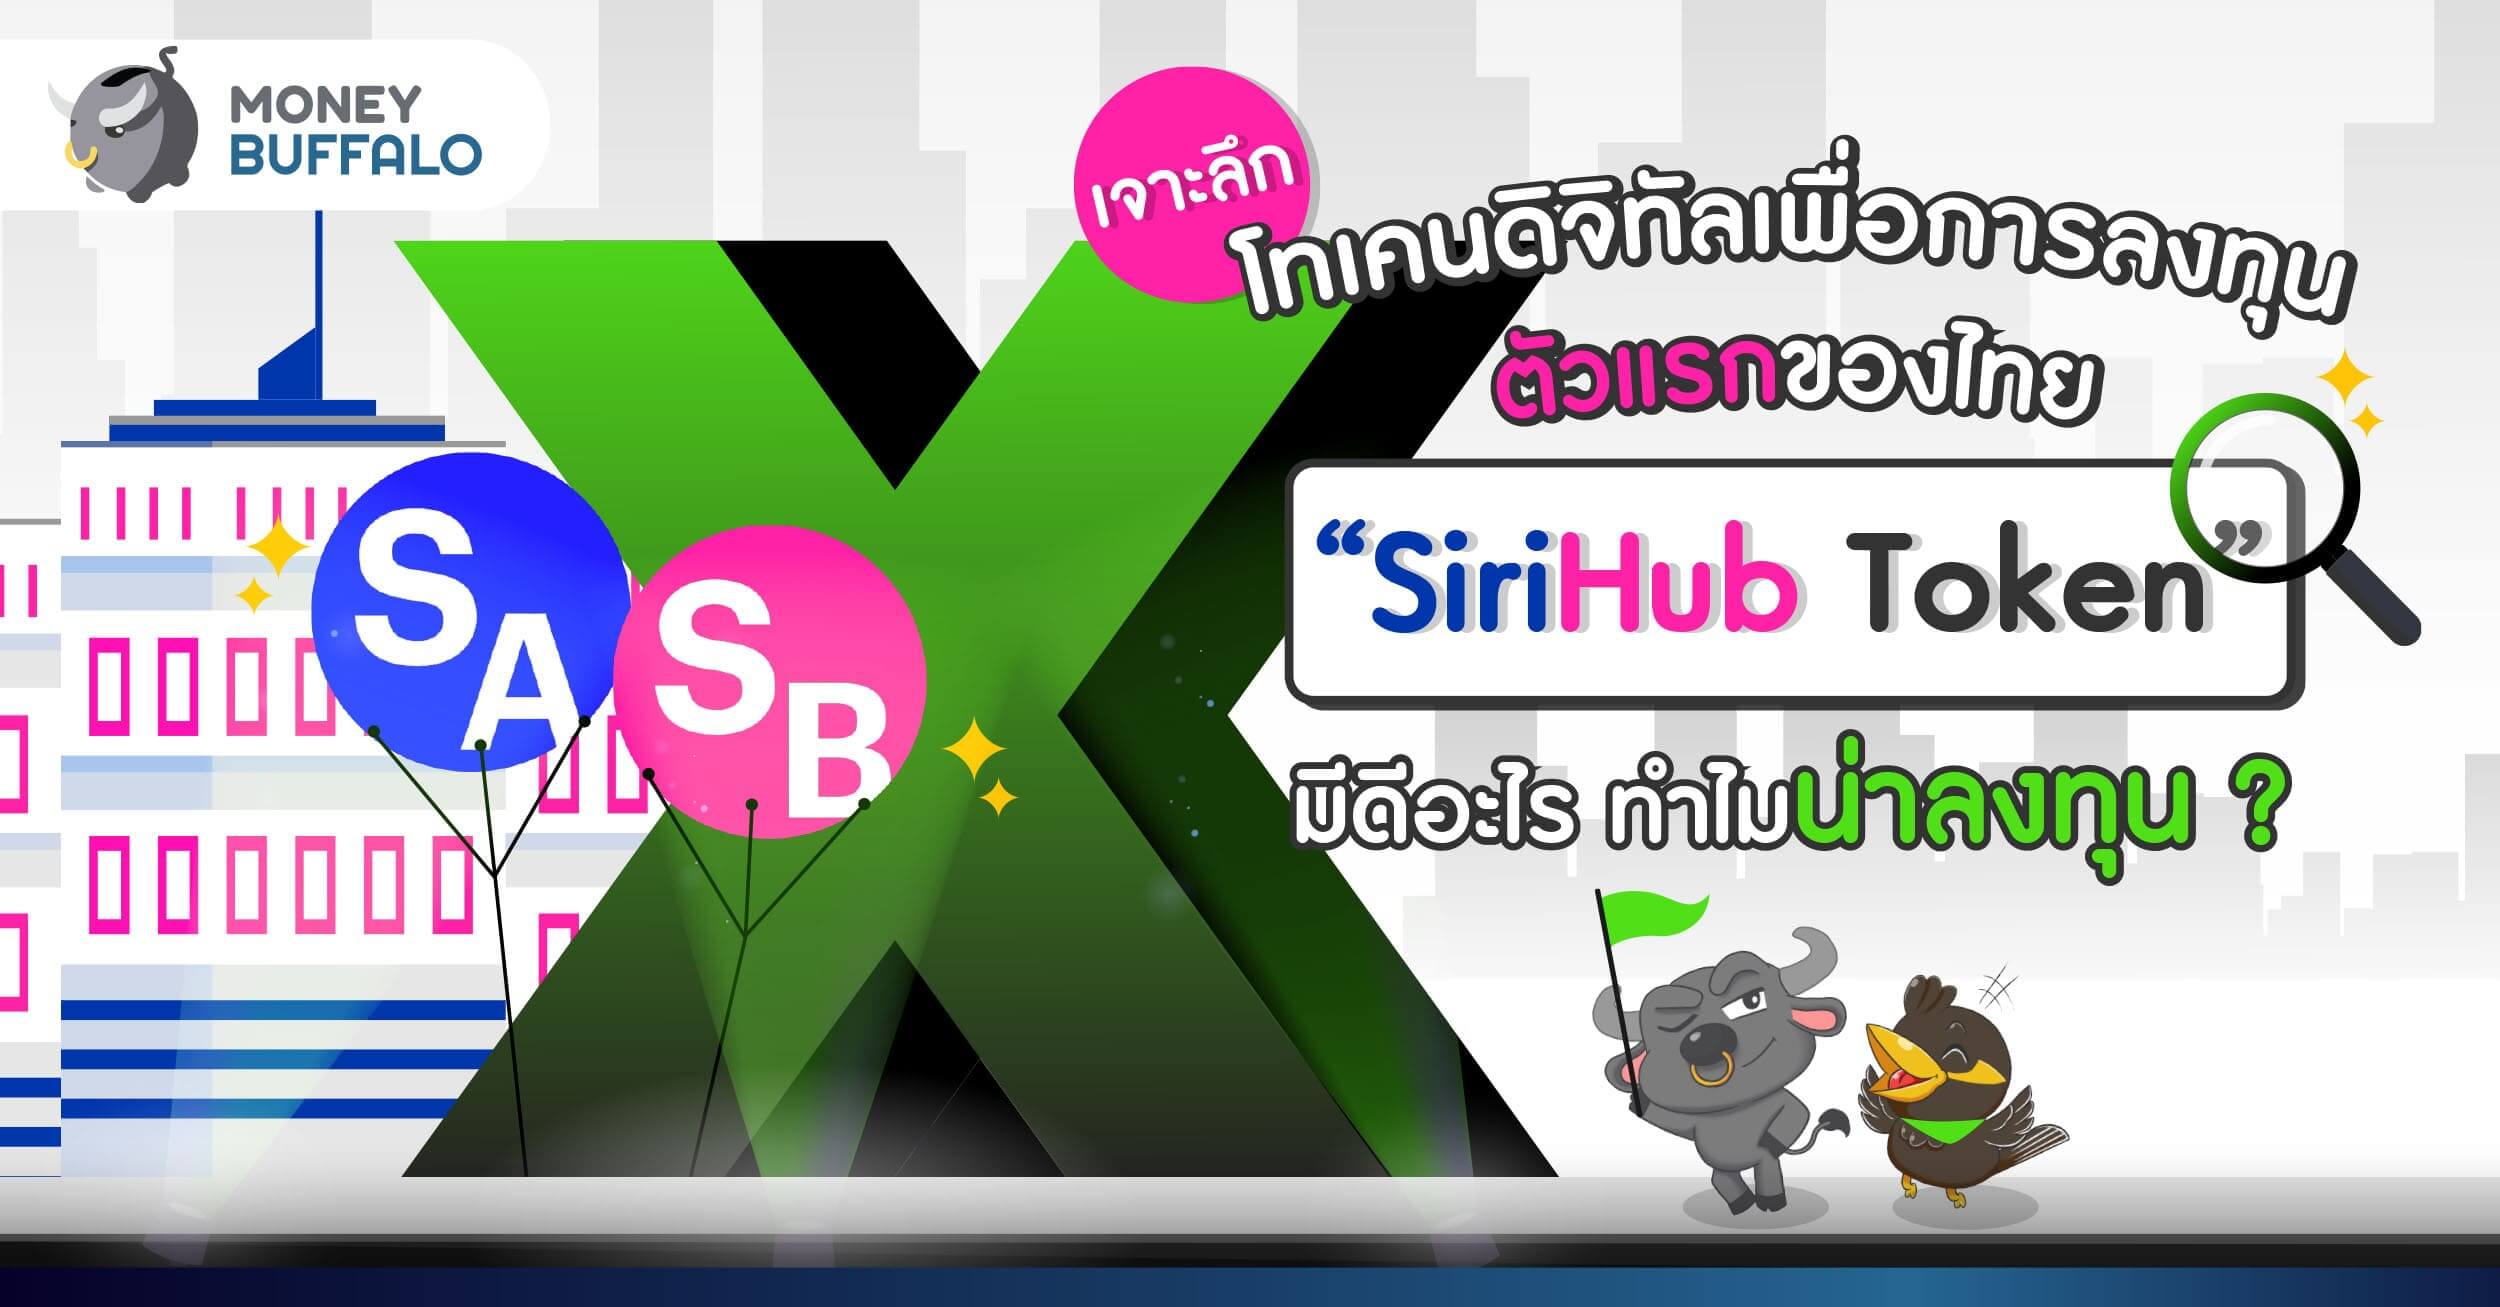 [เจาะลึก] โทเคนดิจิทัลเพื่อการลงทุนตัวแรกของไทย “SiriHub Token” มีดีอะไร ทำไมน่าลงทุน ?